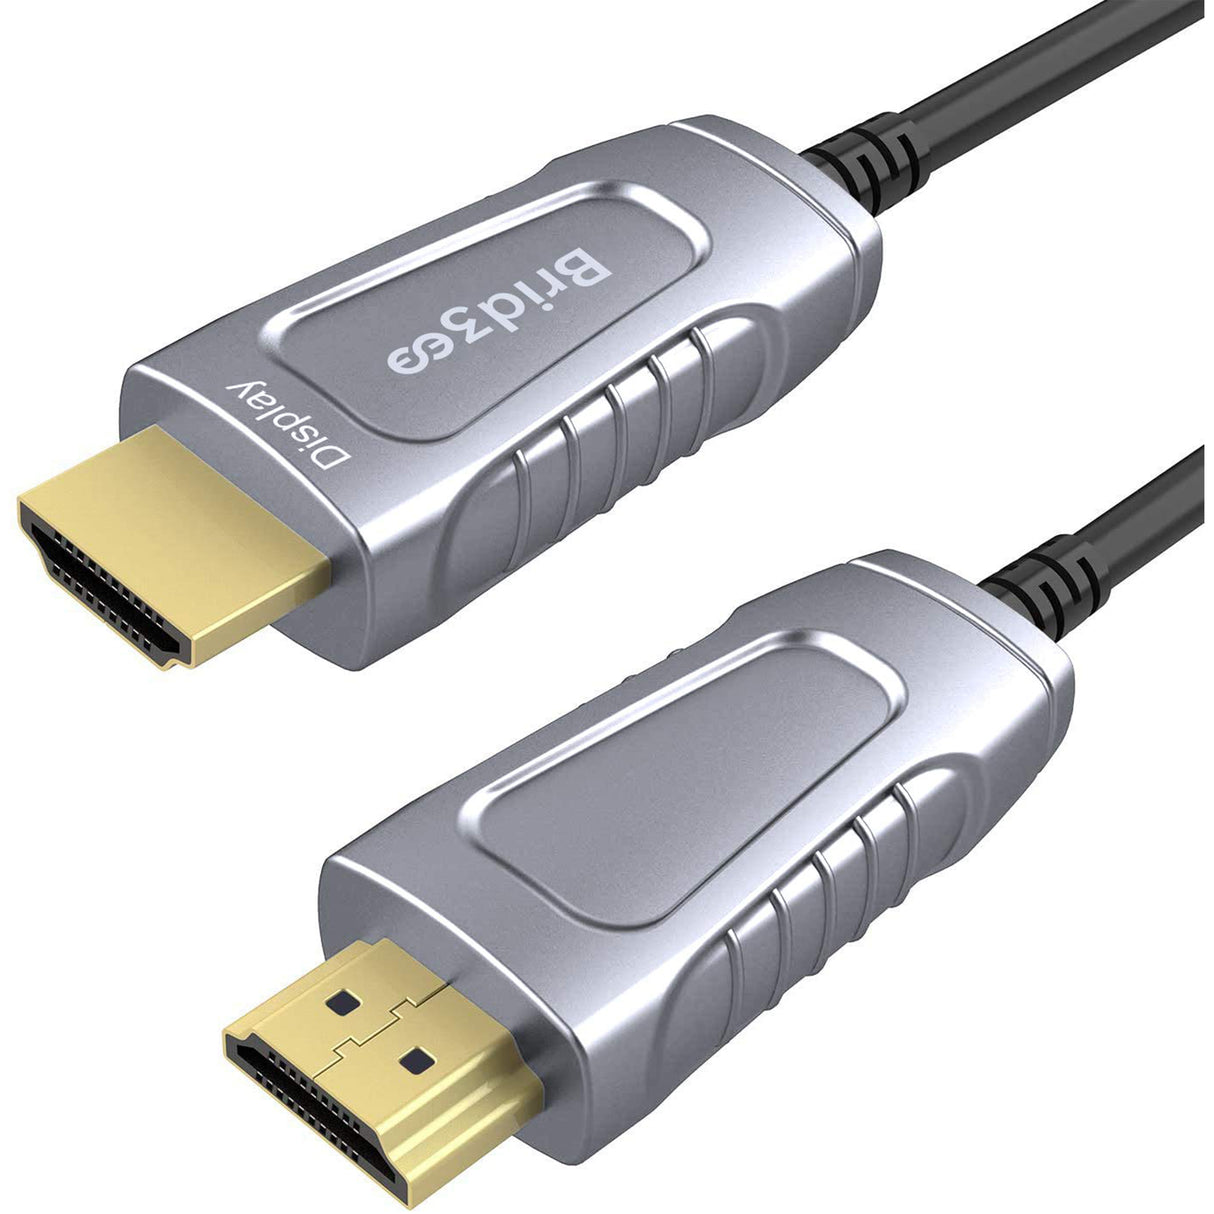 CABLE HDMI SBOX MICRO HDMI 2M - LOFFICIEL